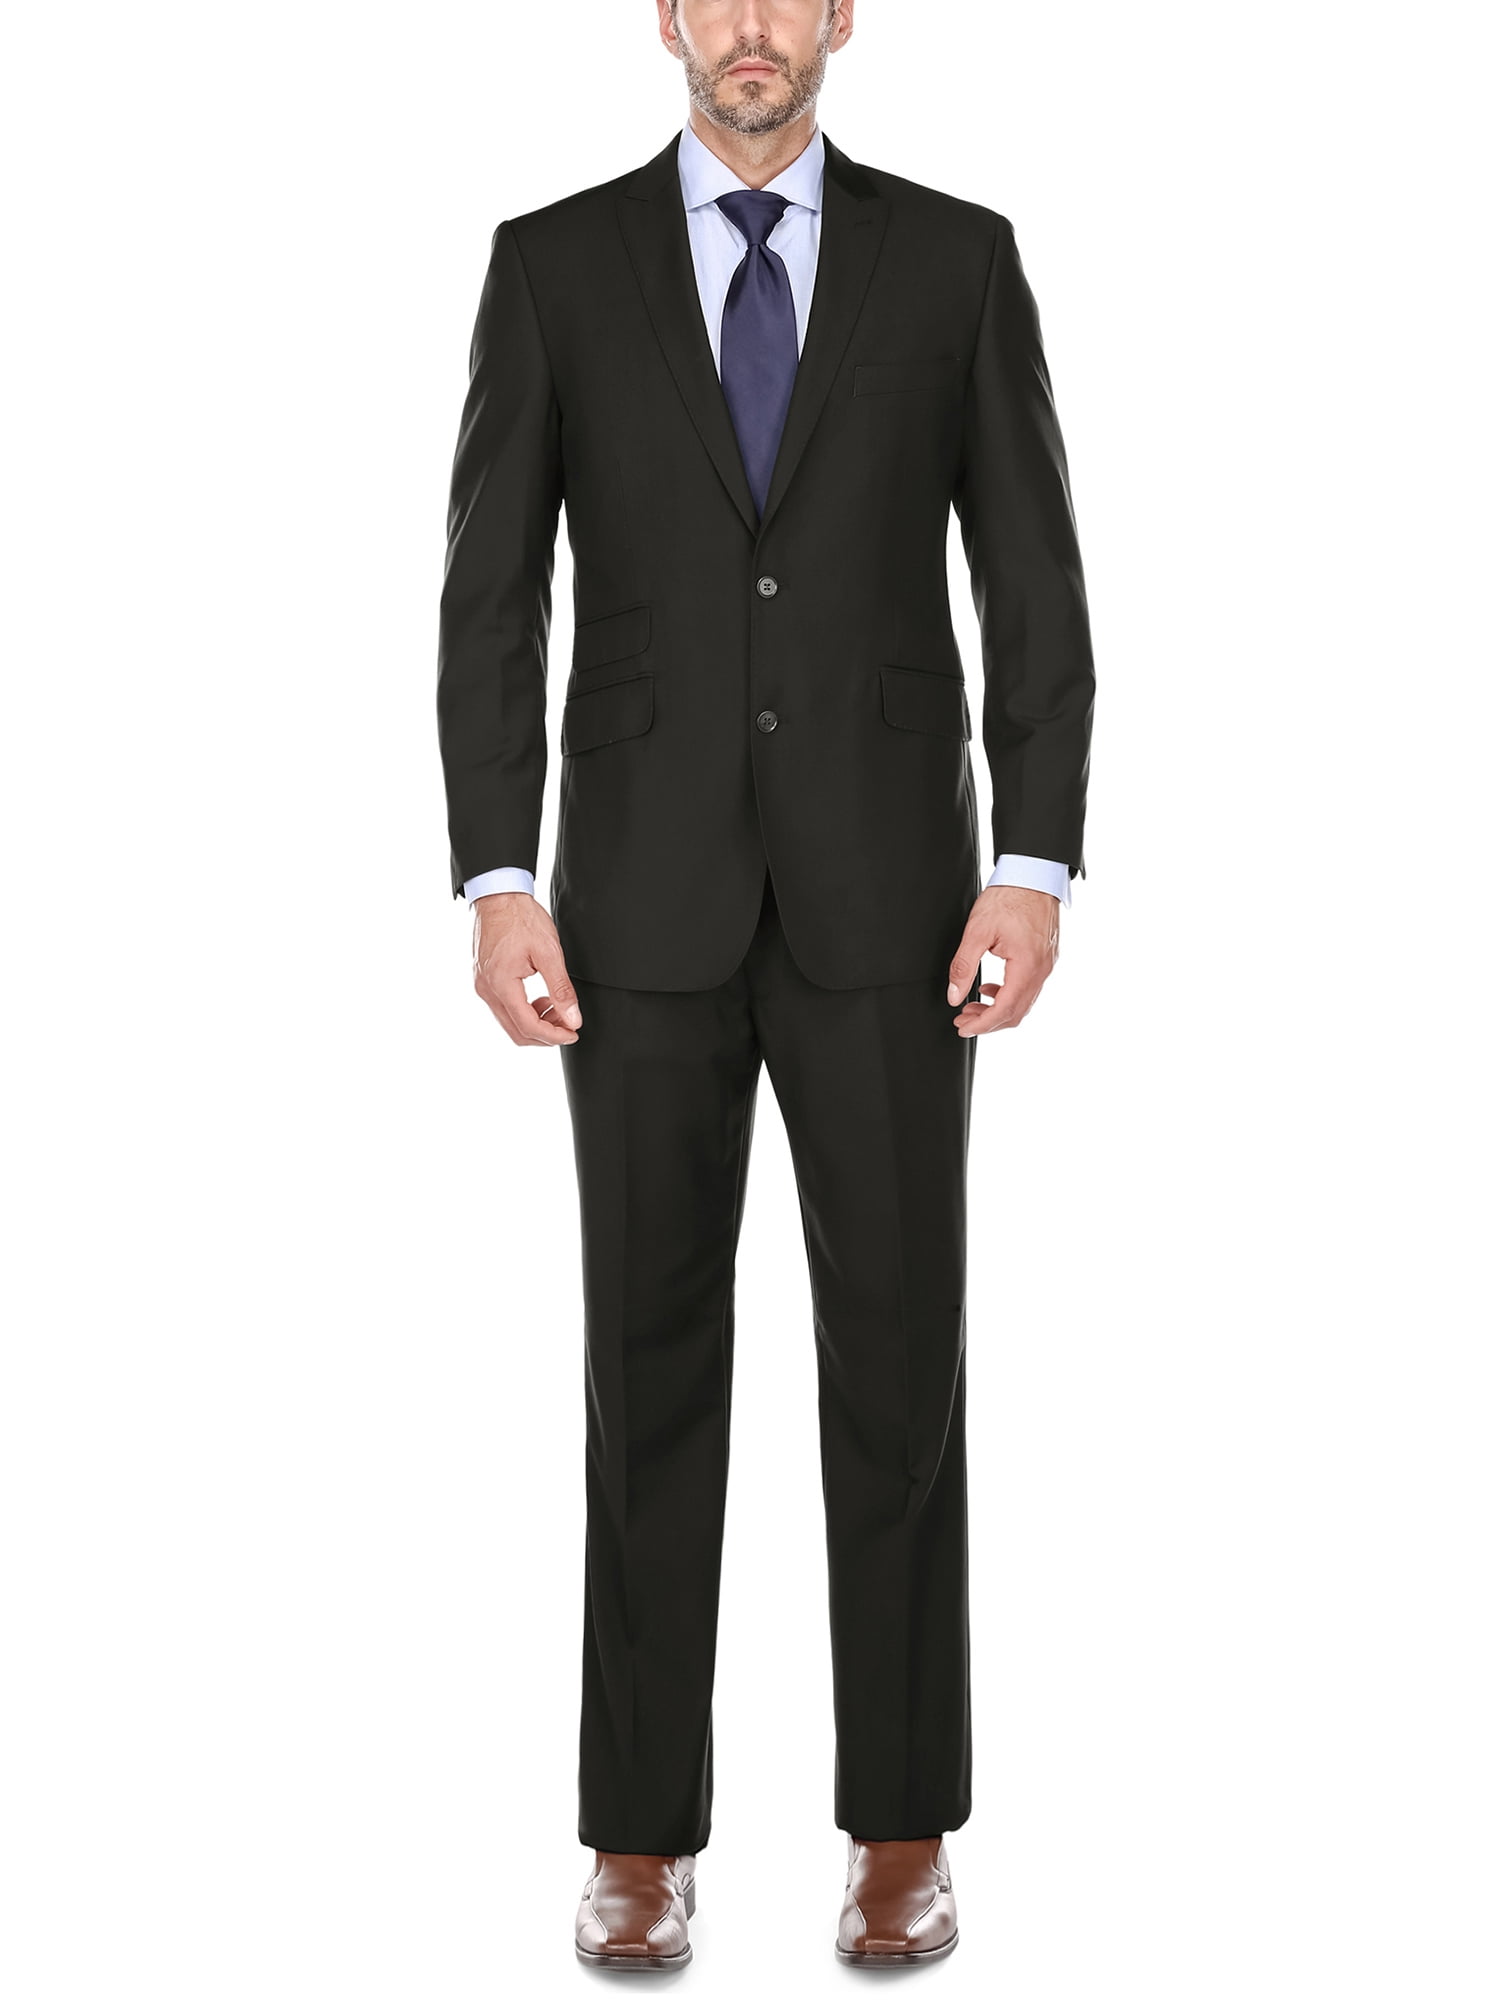 Big Men' s Black Peak Lapel Classic Fit Two Piece Suit - Walmart.com